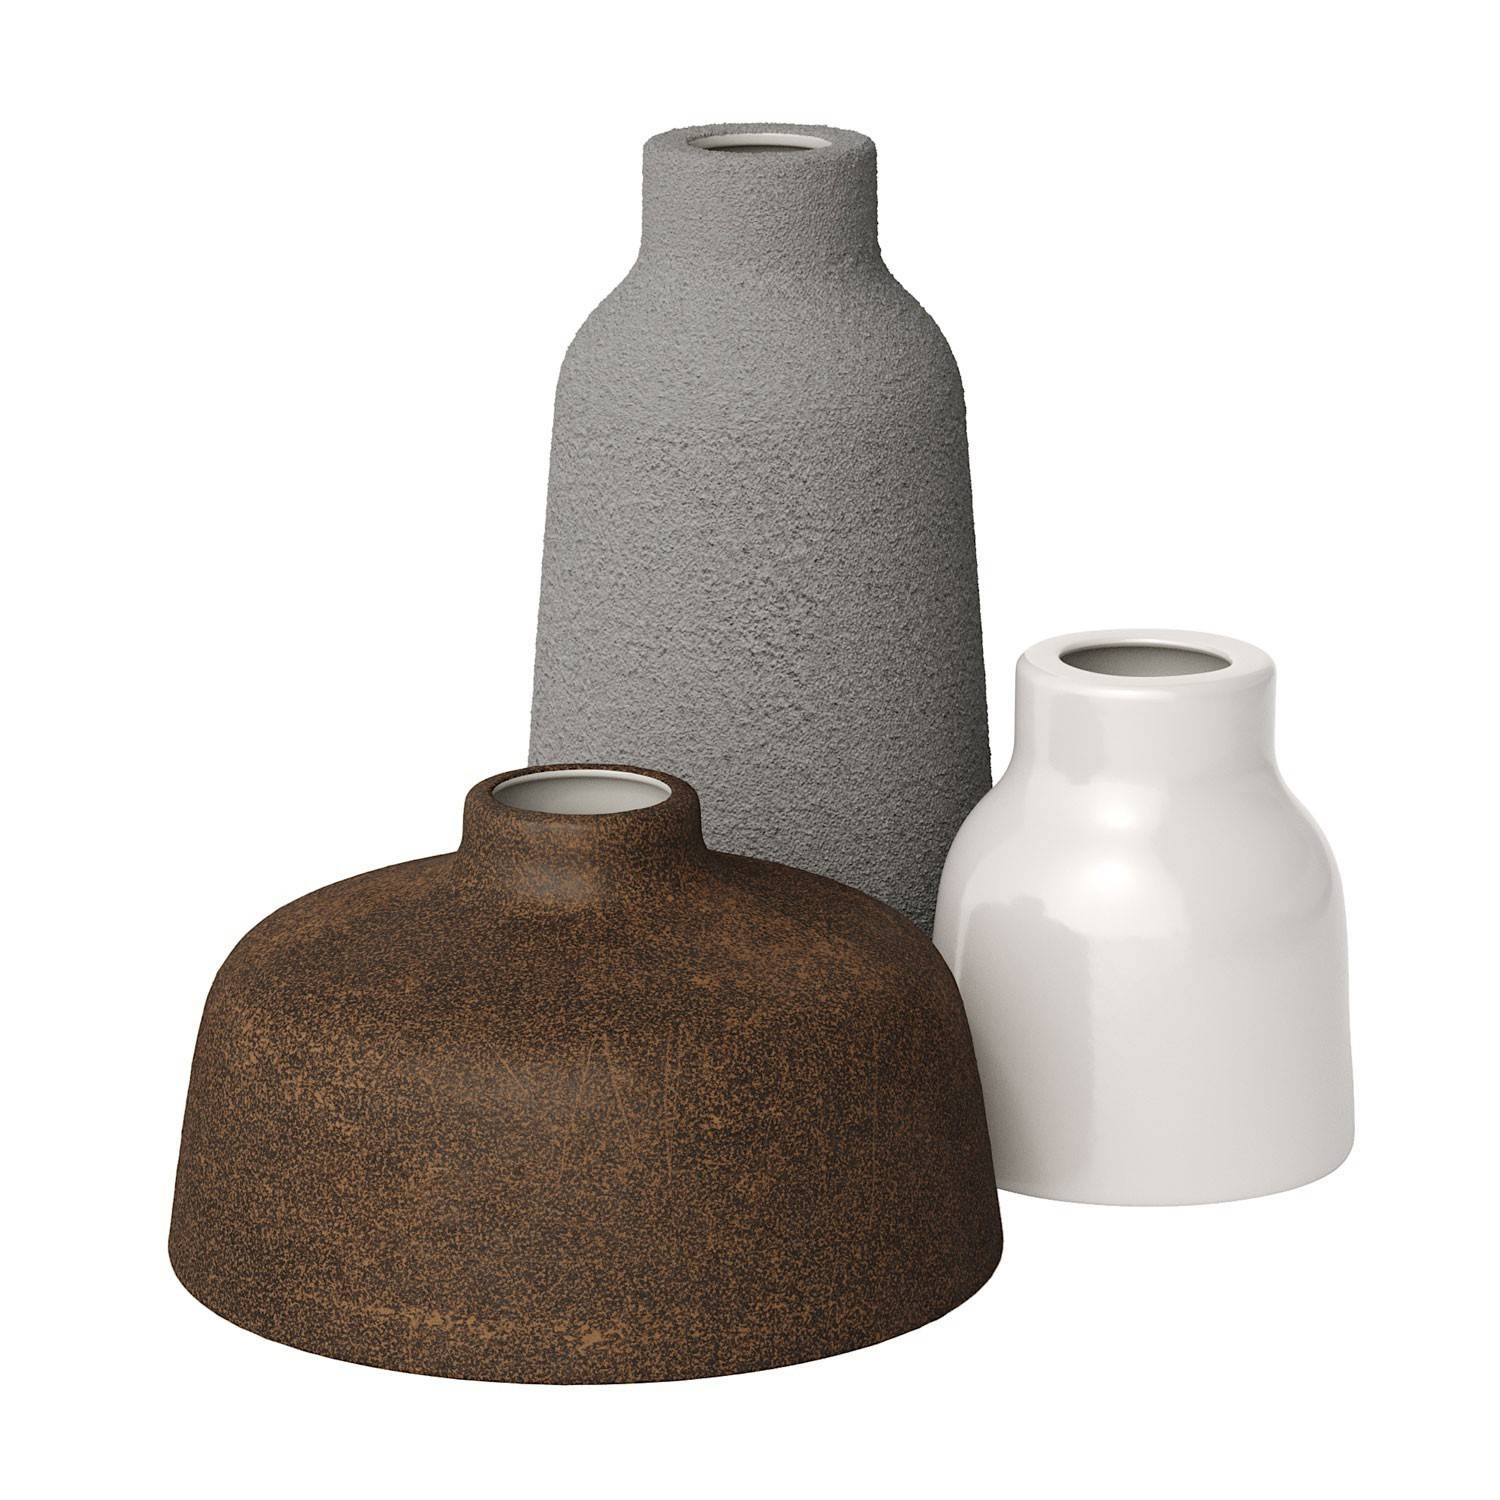 Ceramiczny klosz Vase kolekcja Materia - Made in Italy